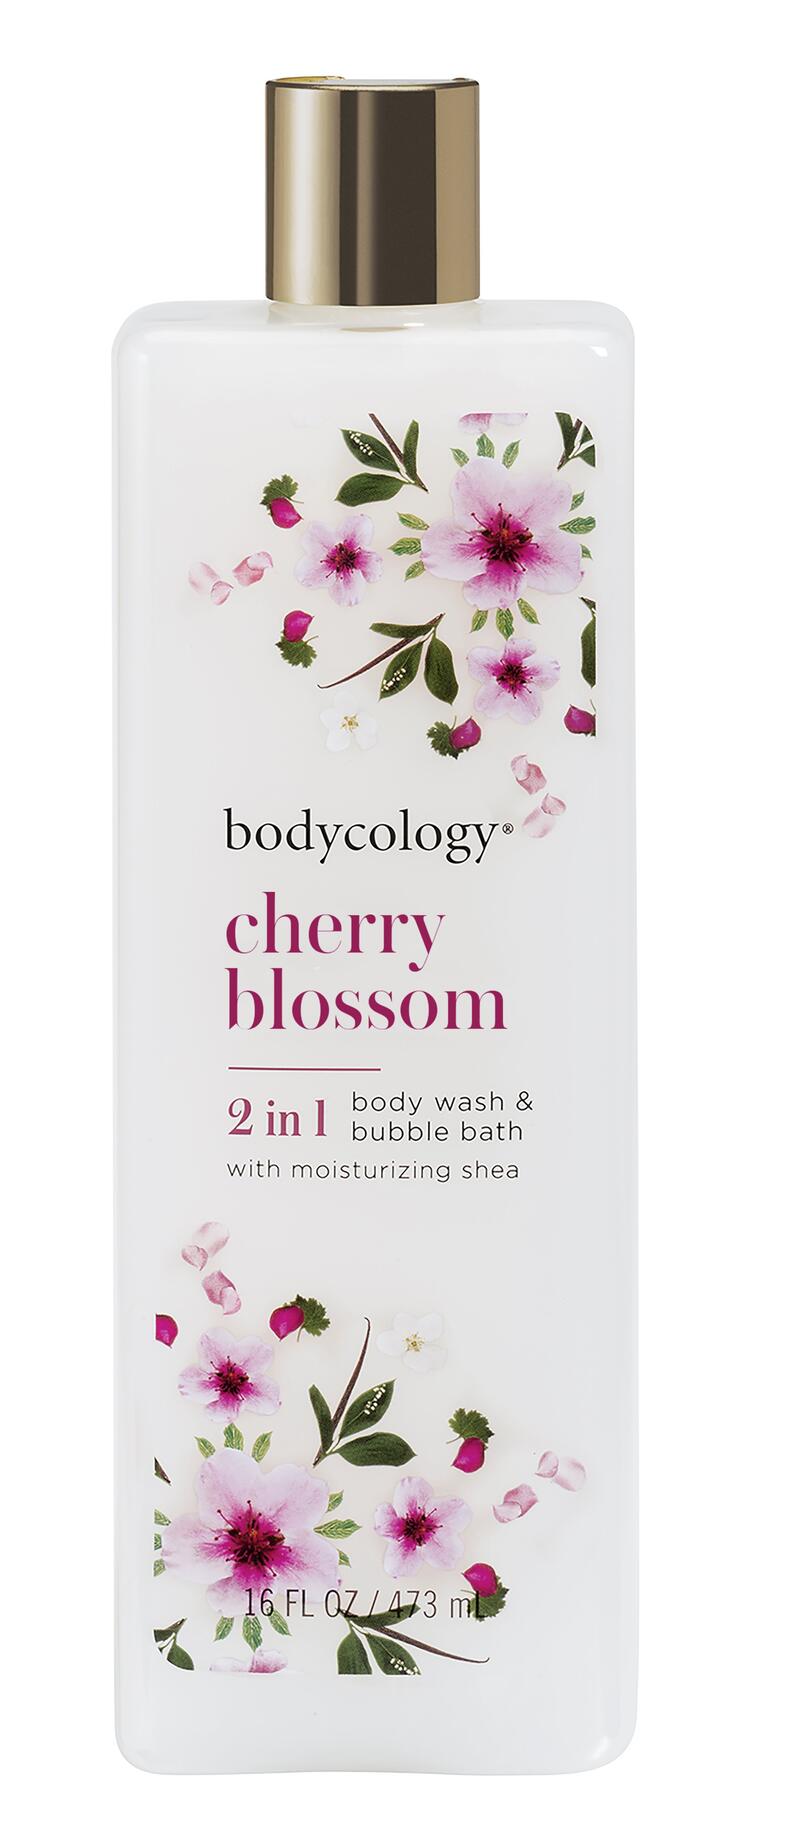 Bodycology Body Wash & Bubble Bath Cherry Blossom 16oz: $15.00